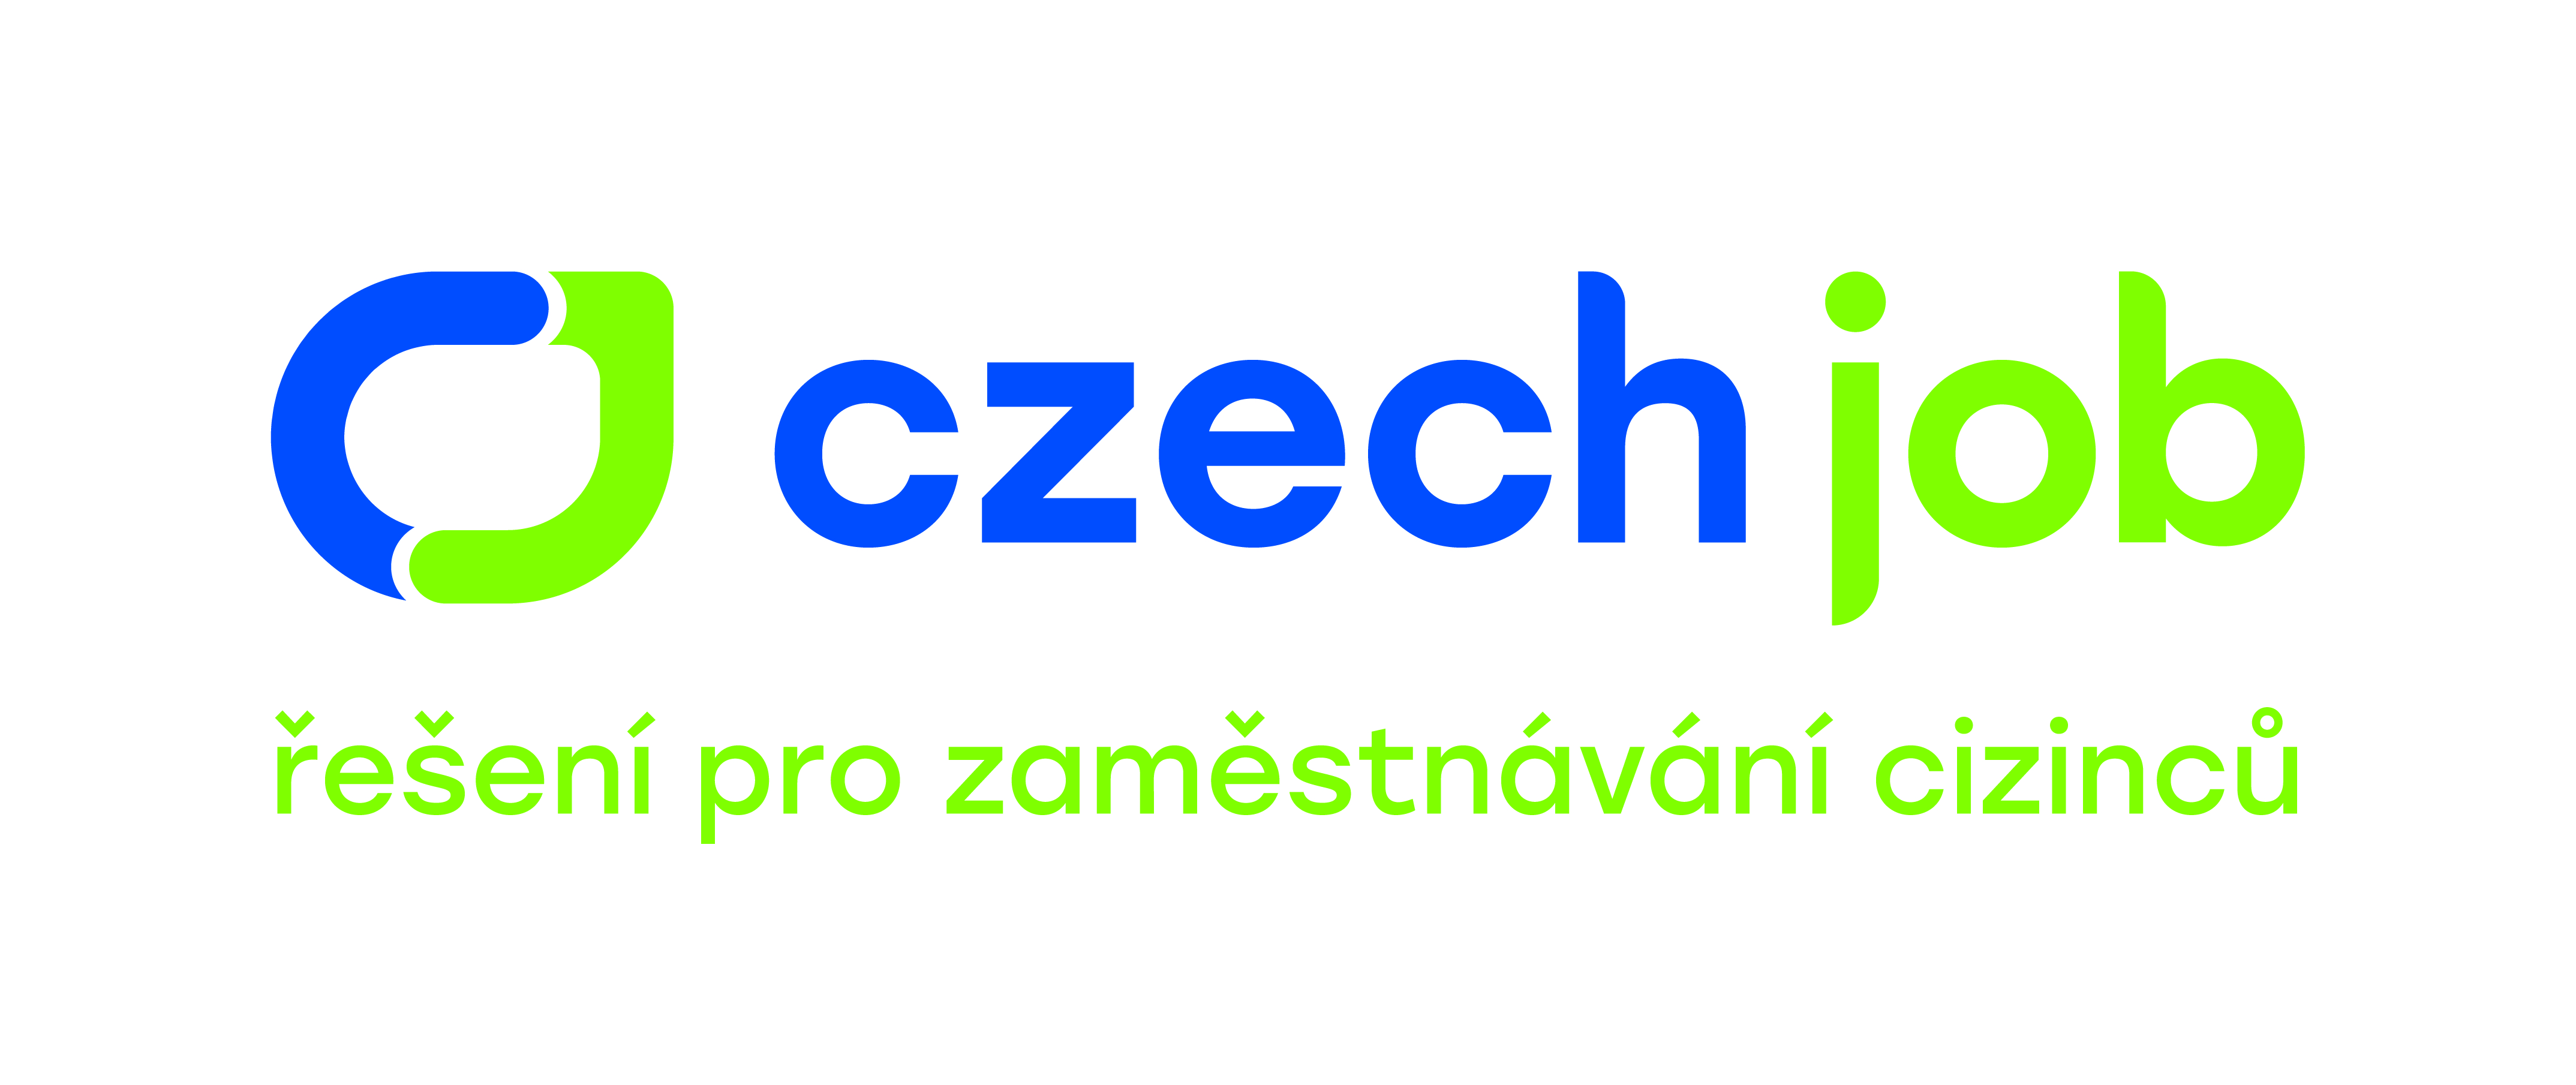 Czech Job - řešení pro zaměstnávání cizinců